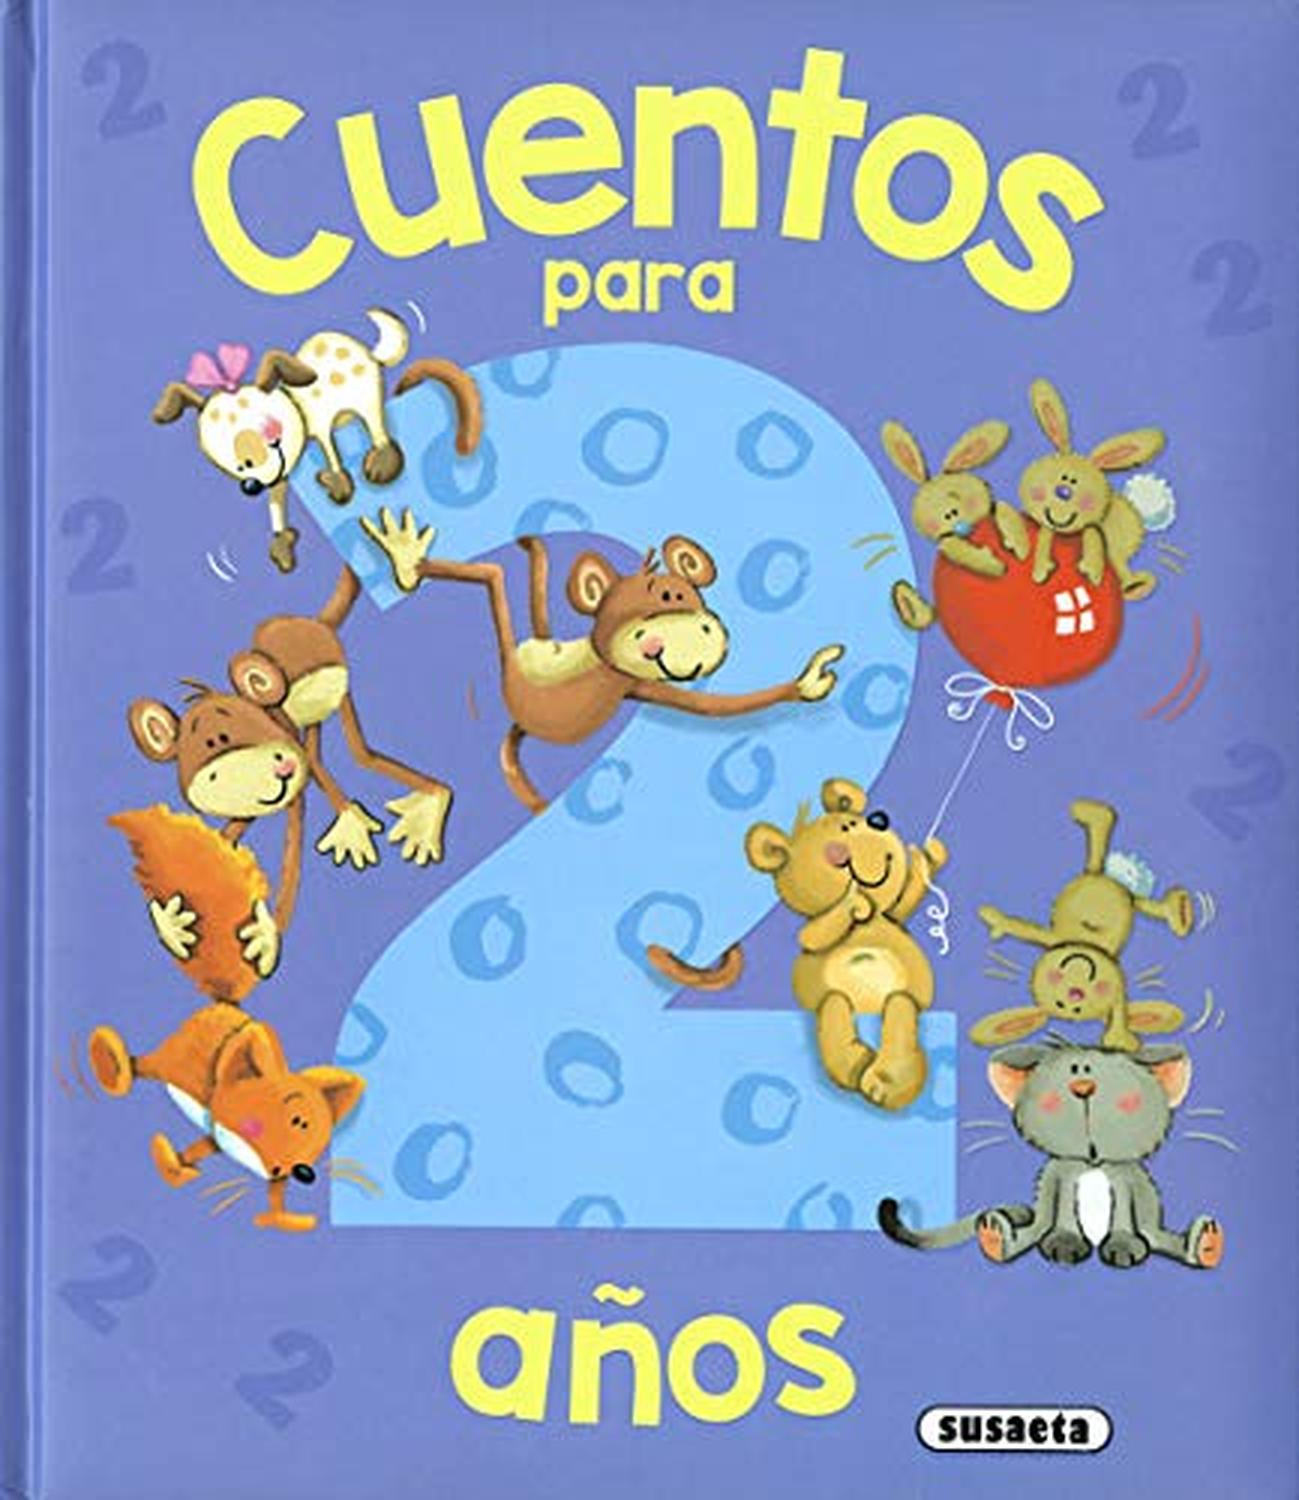 Cuentos para niños de 2 años (Cuentos y ficción) – Cadabra & Books